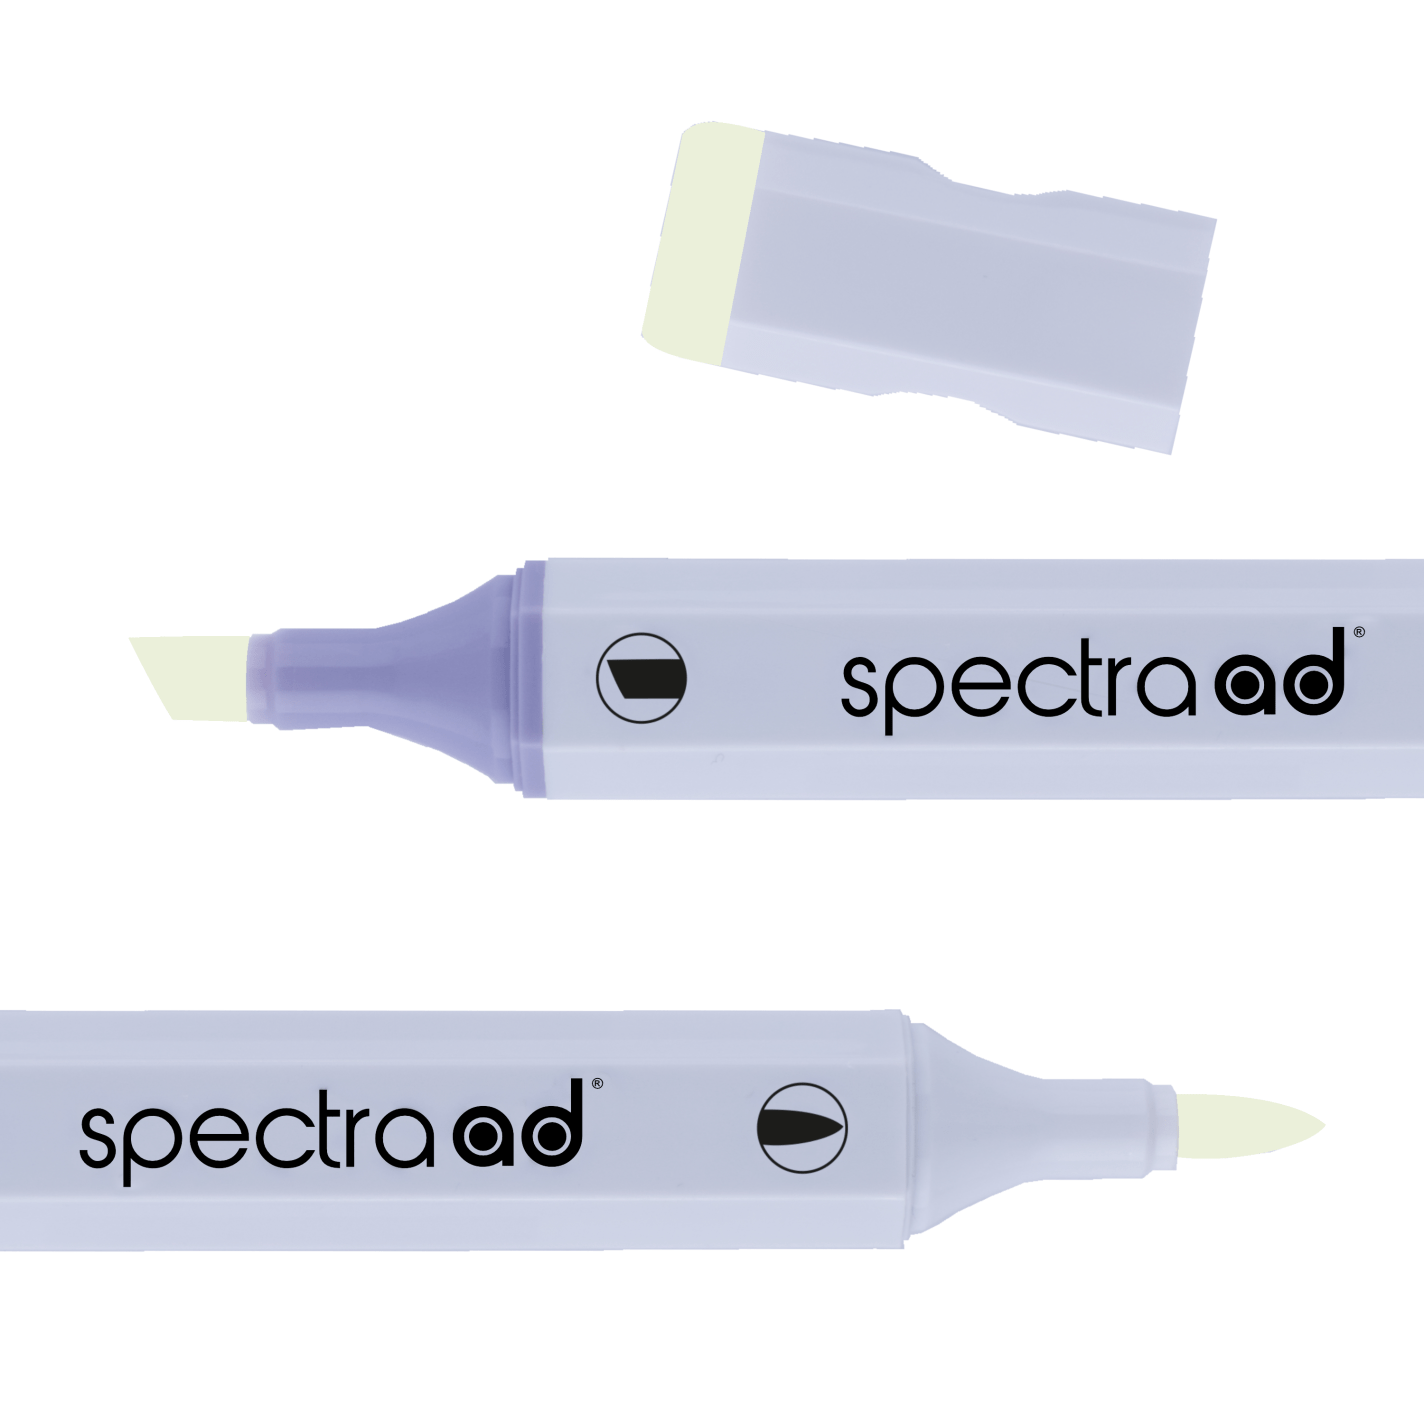 AD Marker Spectra Light Narcissus